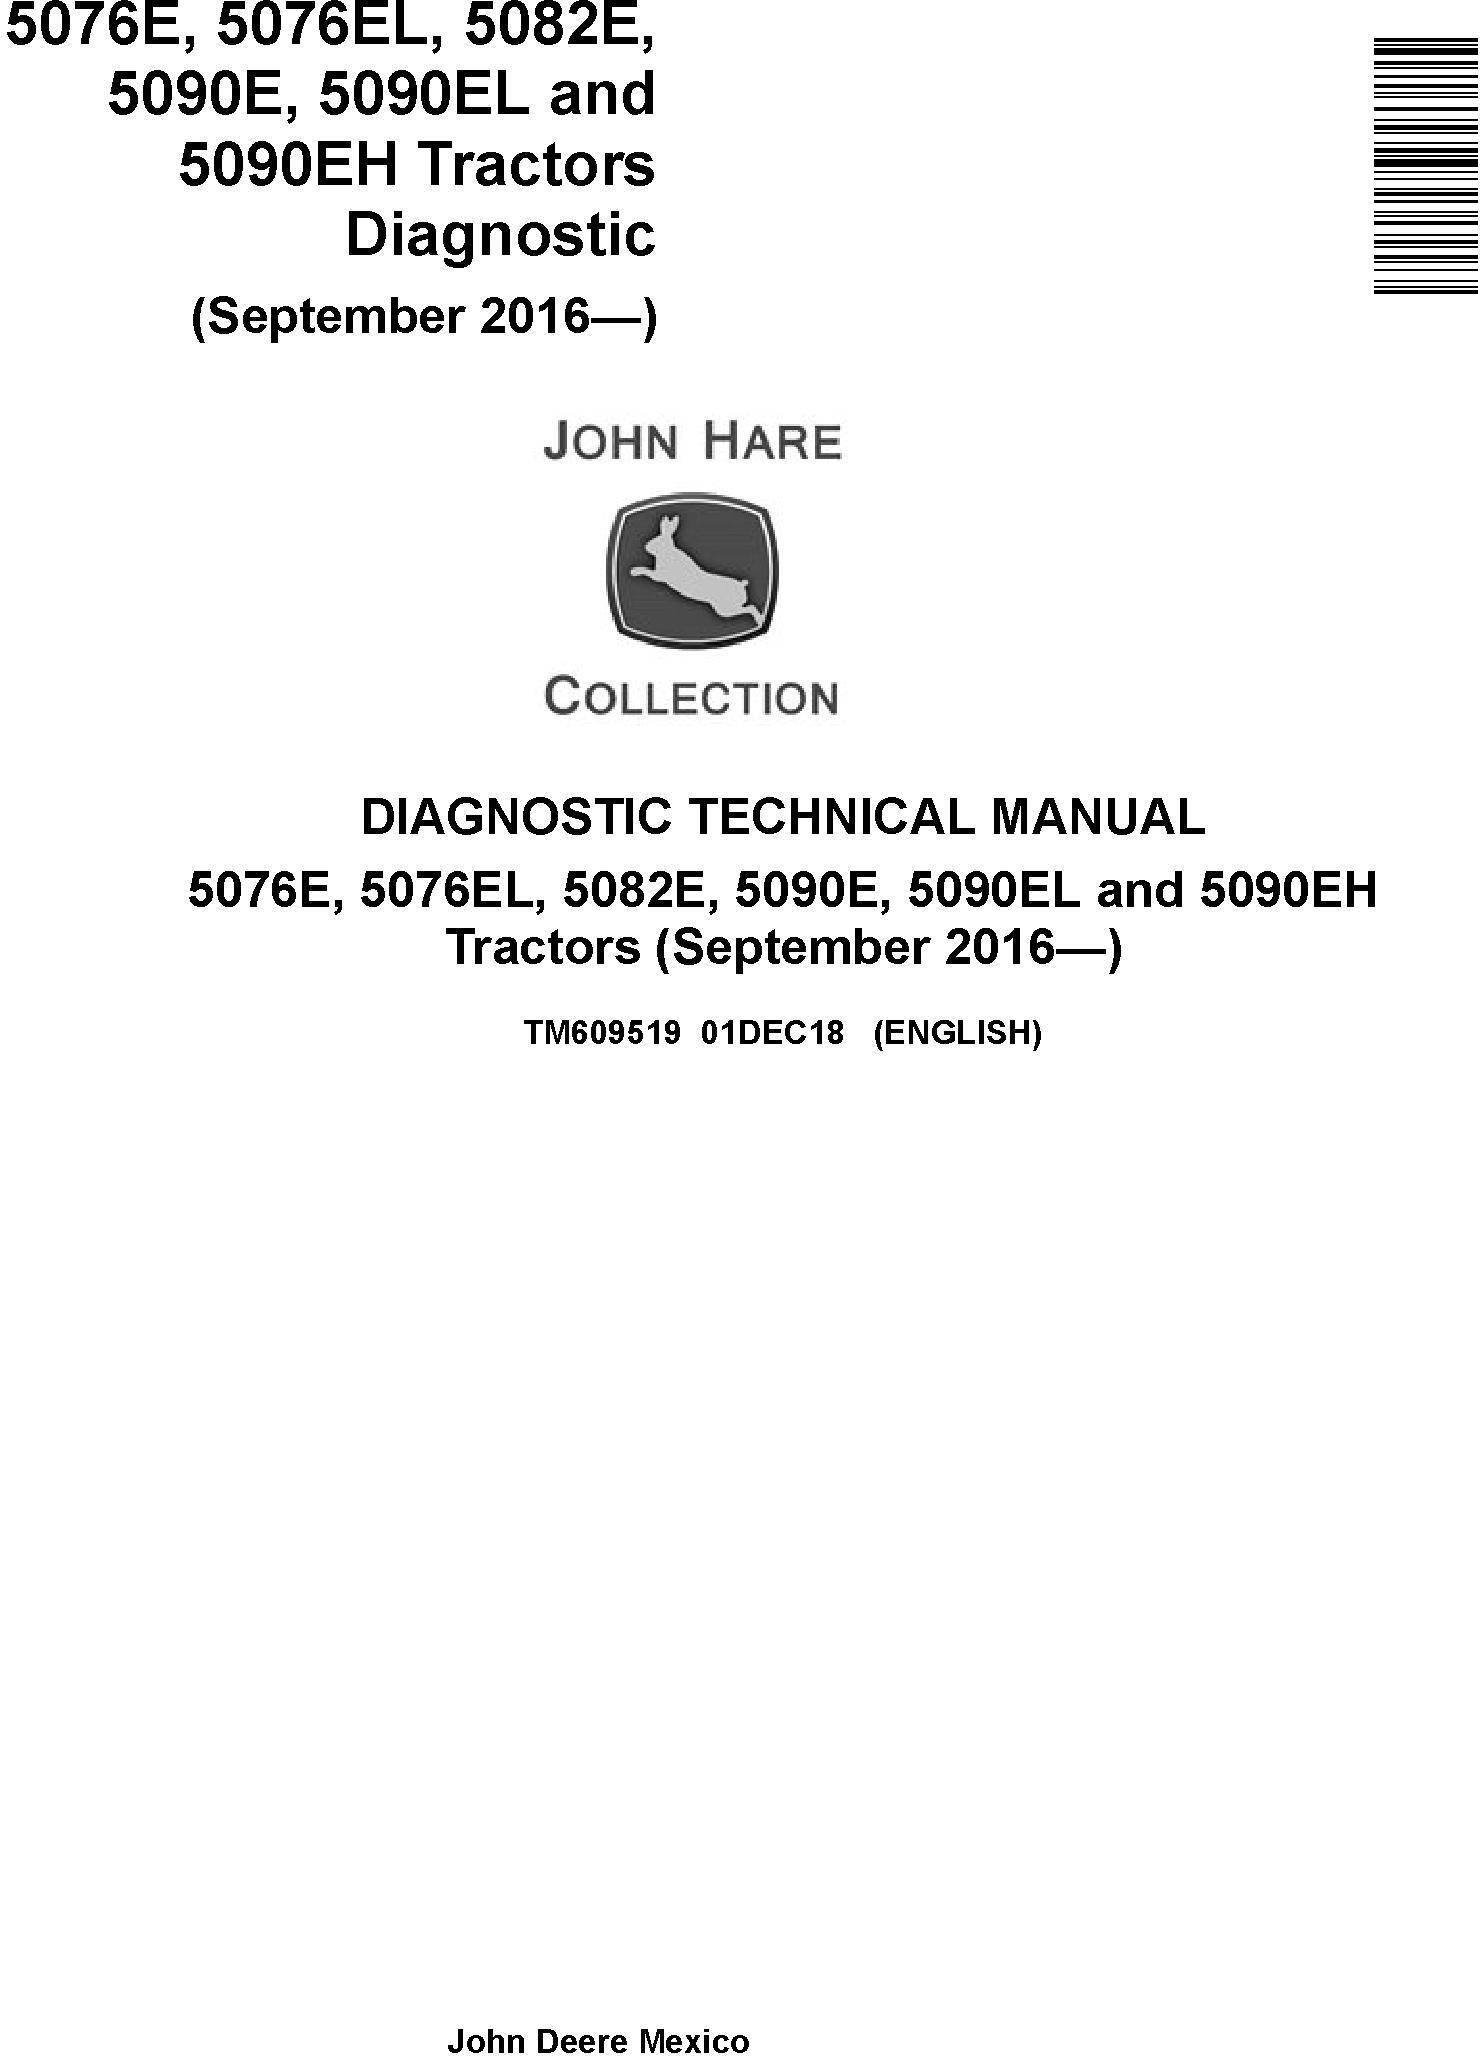 John Deere 5076E,5076EL, 5082E, 5090E, 5090EL,5090EH Tractors Diagnostic Technical Manual (TM609519)